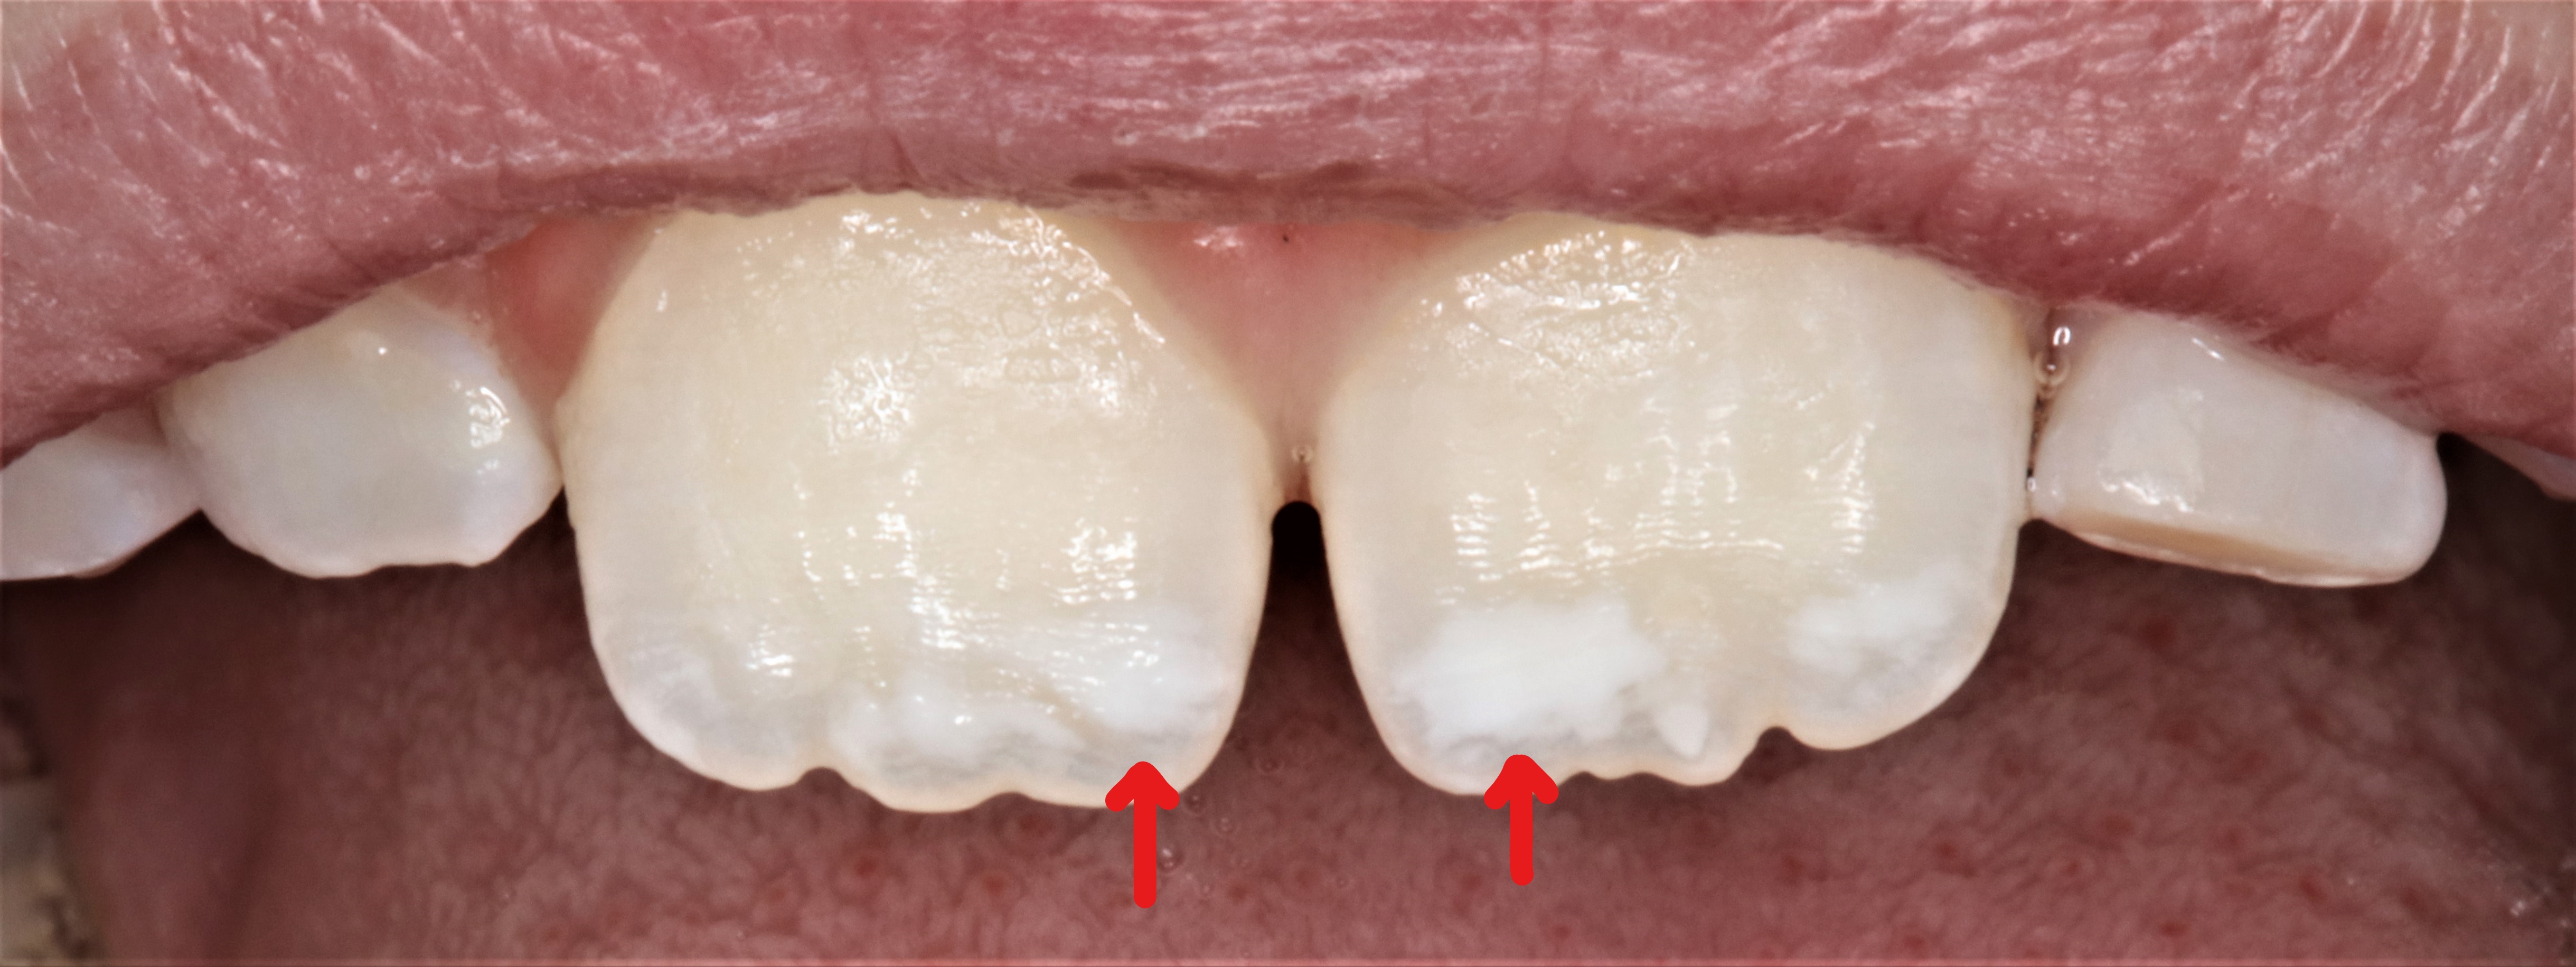  لکه سفید بر دندان کودکان